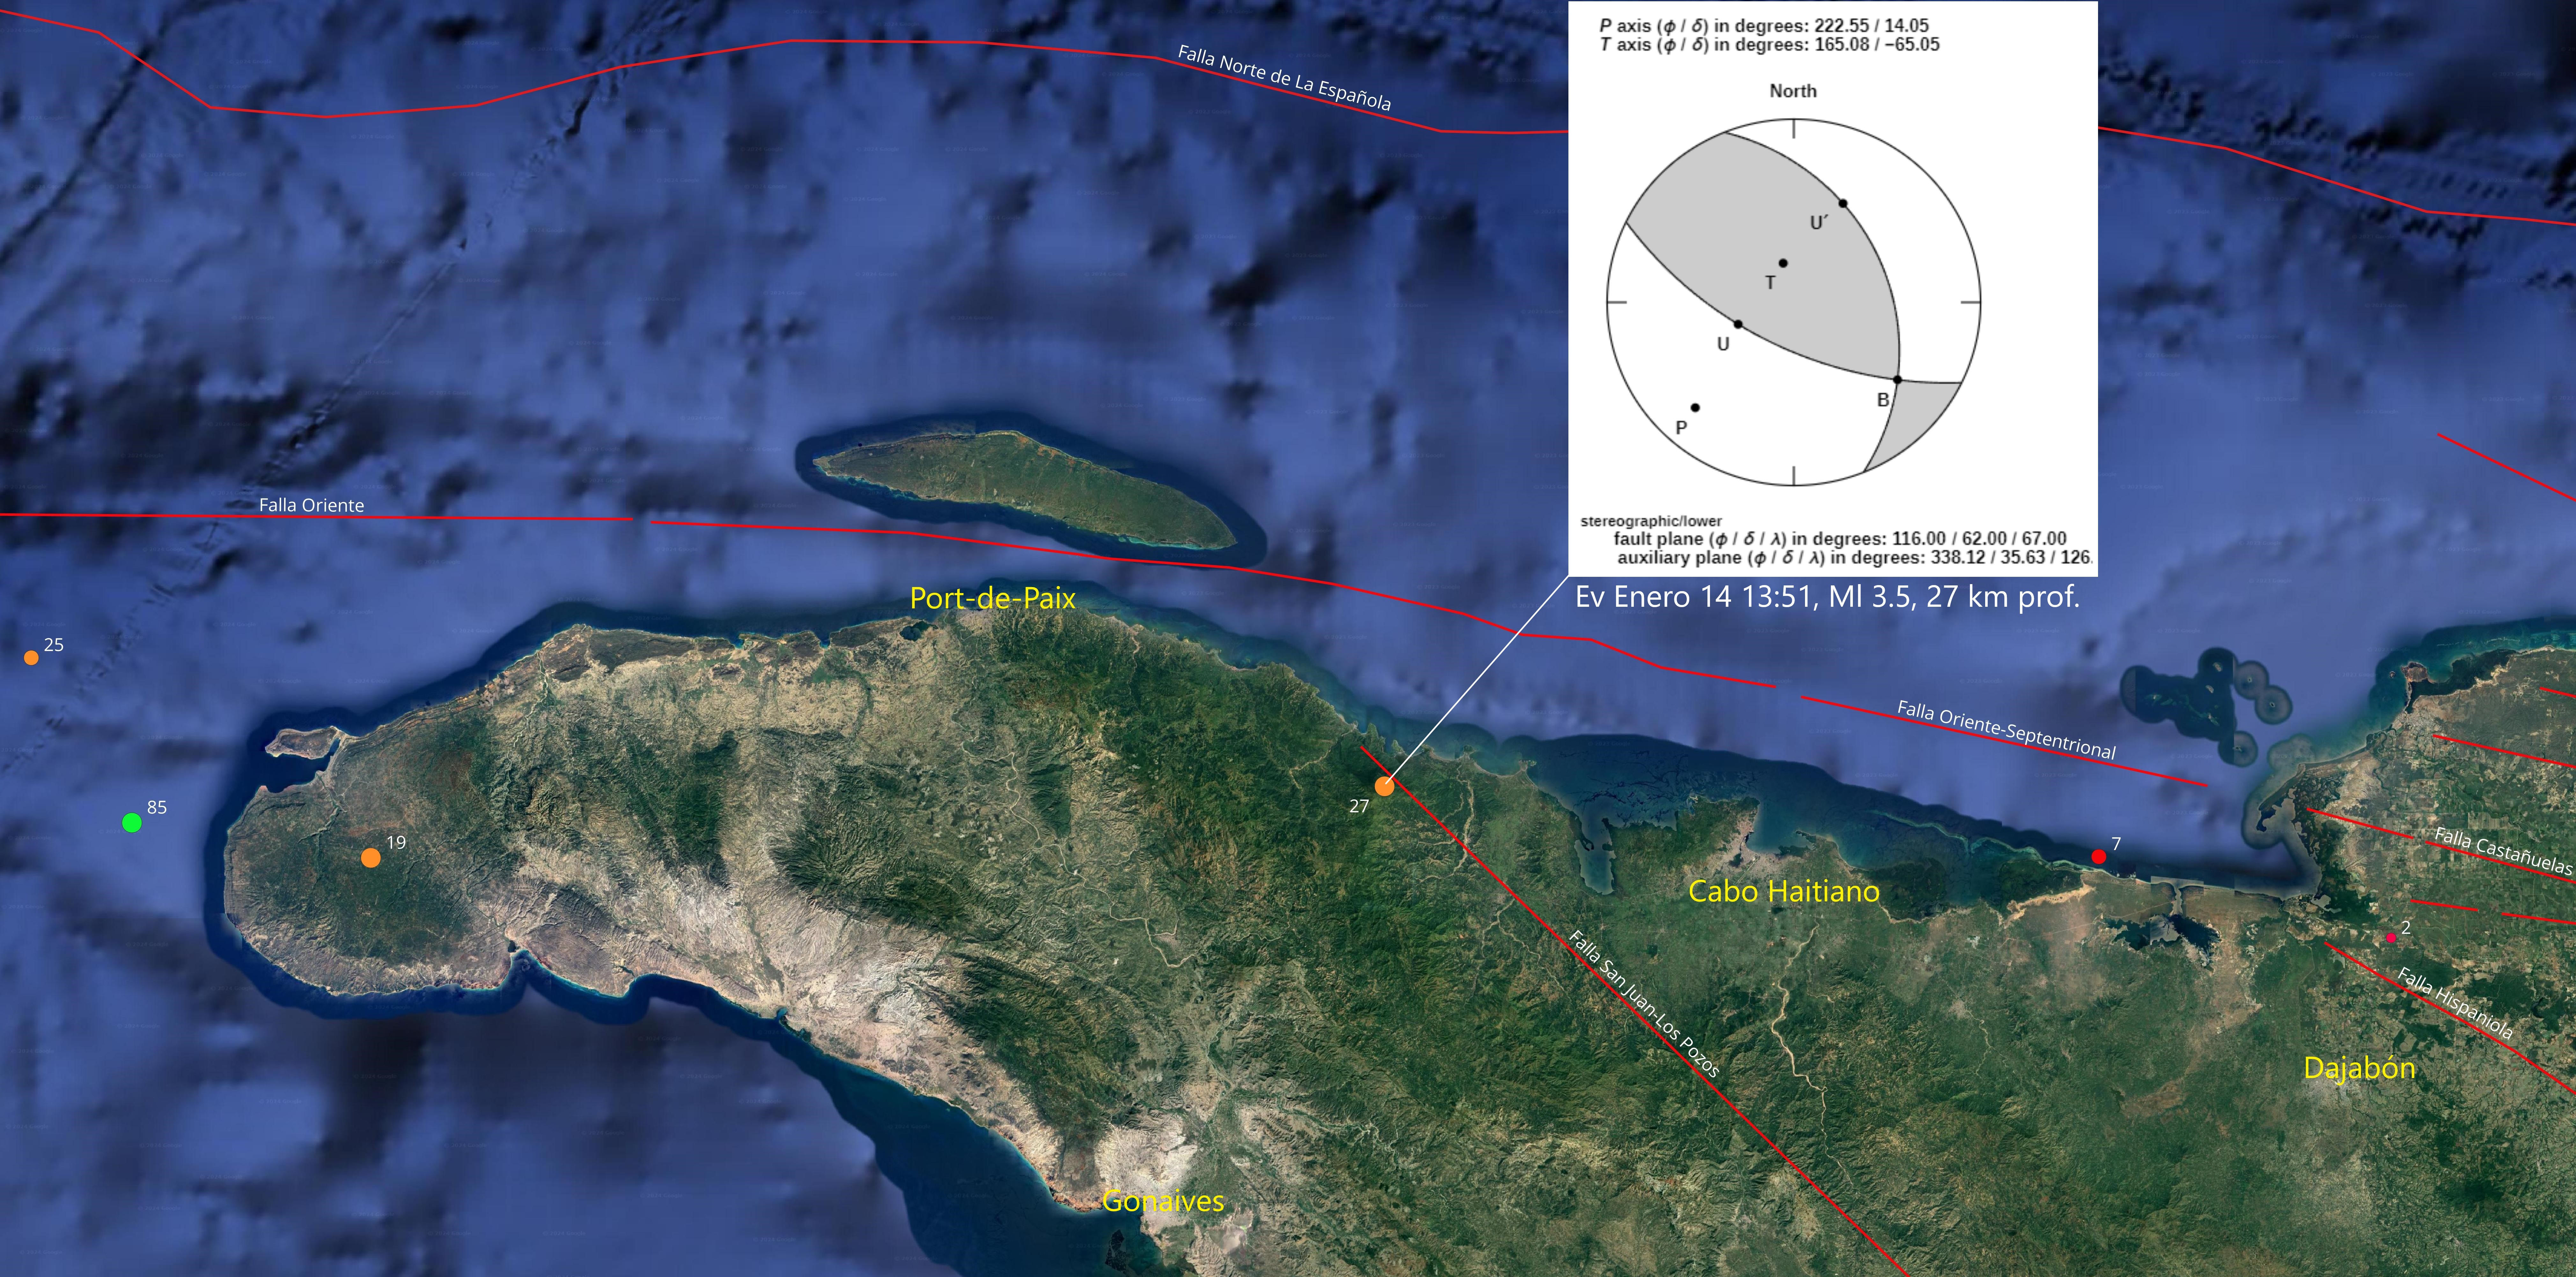 Figura 4, Mapa del norte de Haití mostrando epicentro del temblor de magnitud 3.5 entre Cabo Haitiano y Port-de-Paix con recuadro indicando mecanismo focal obtenido